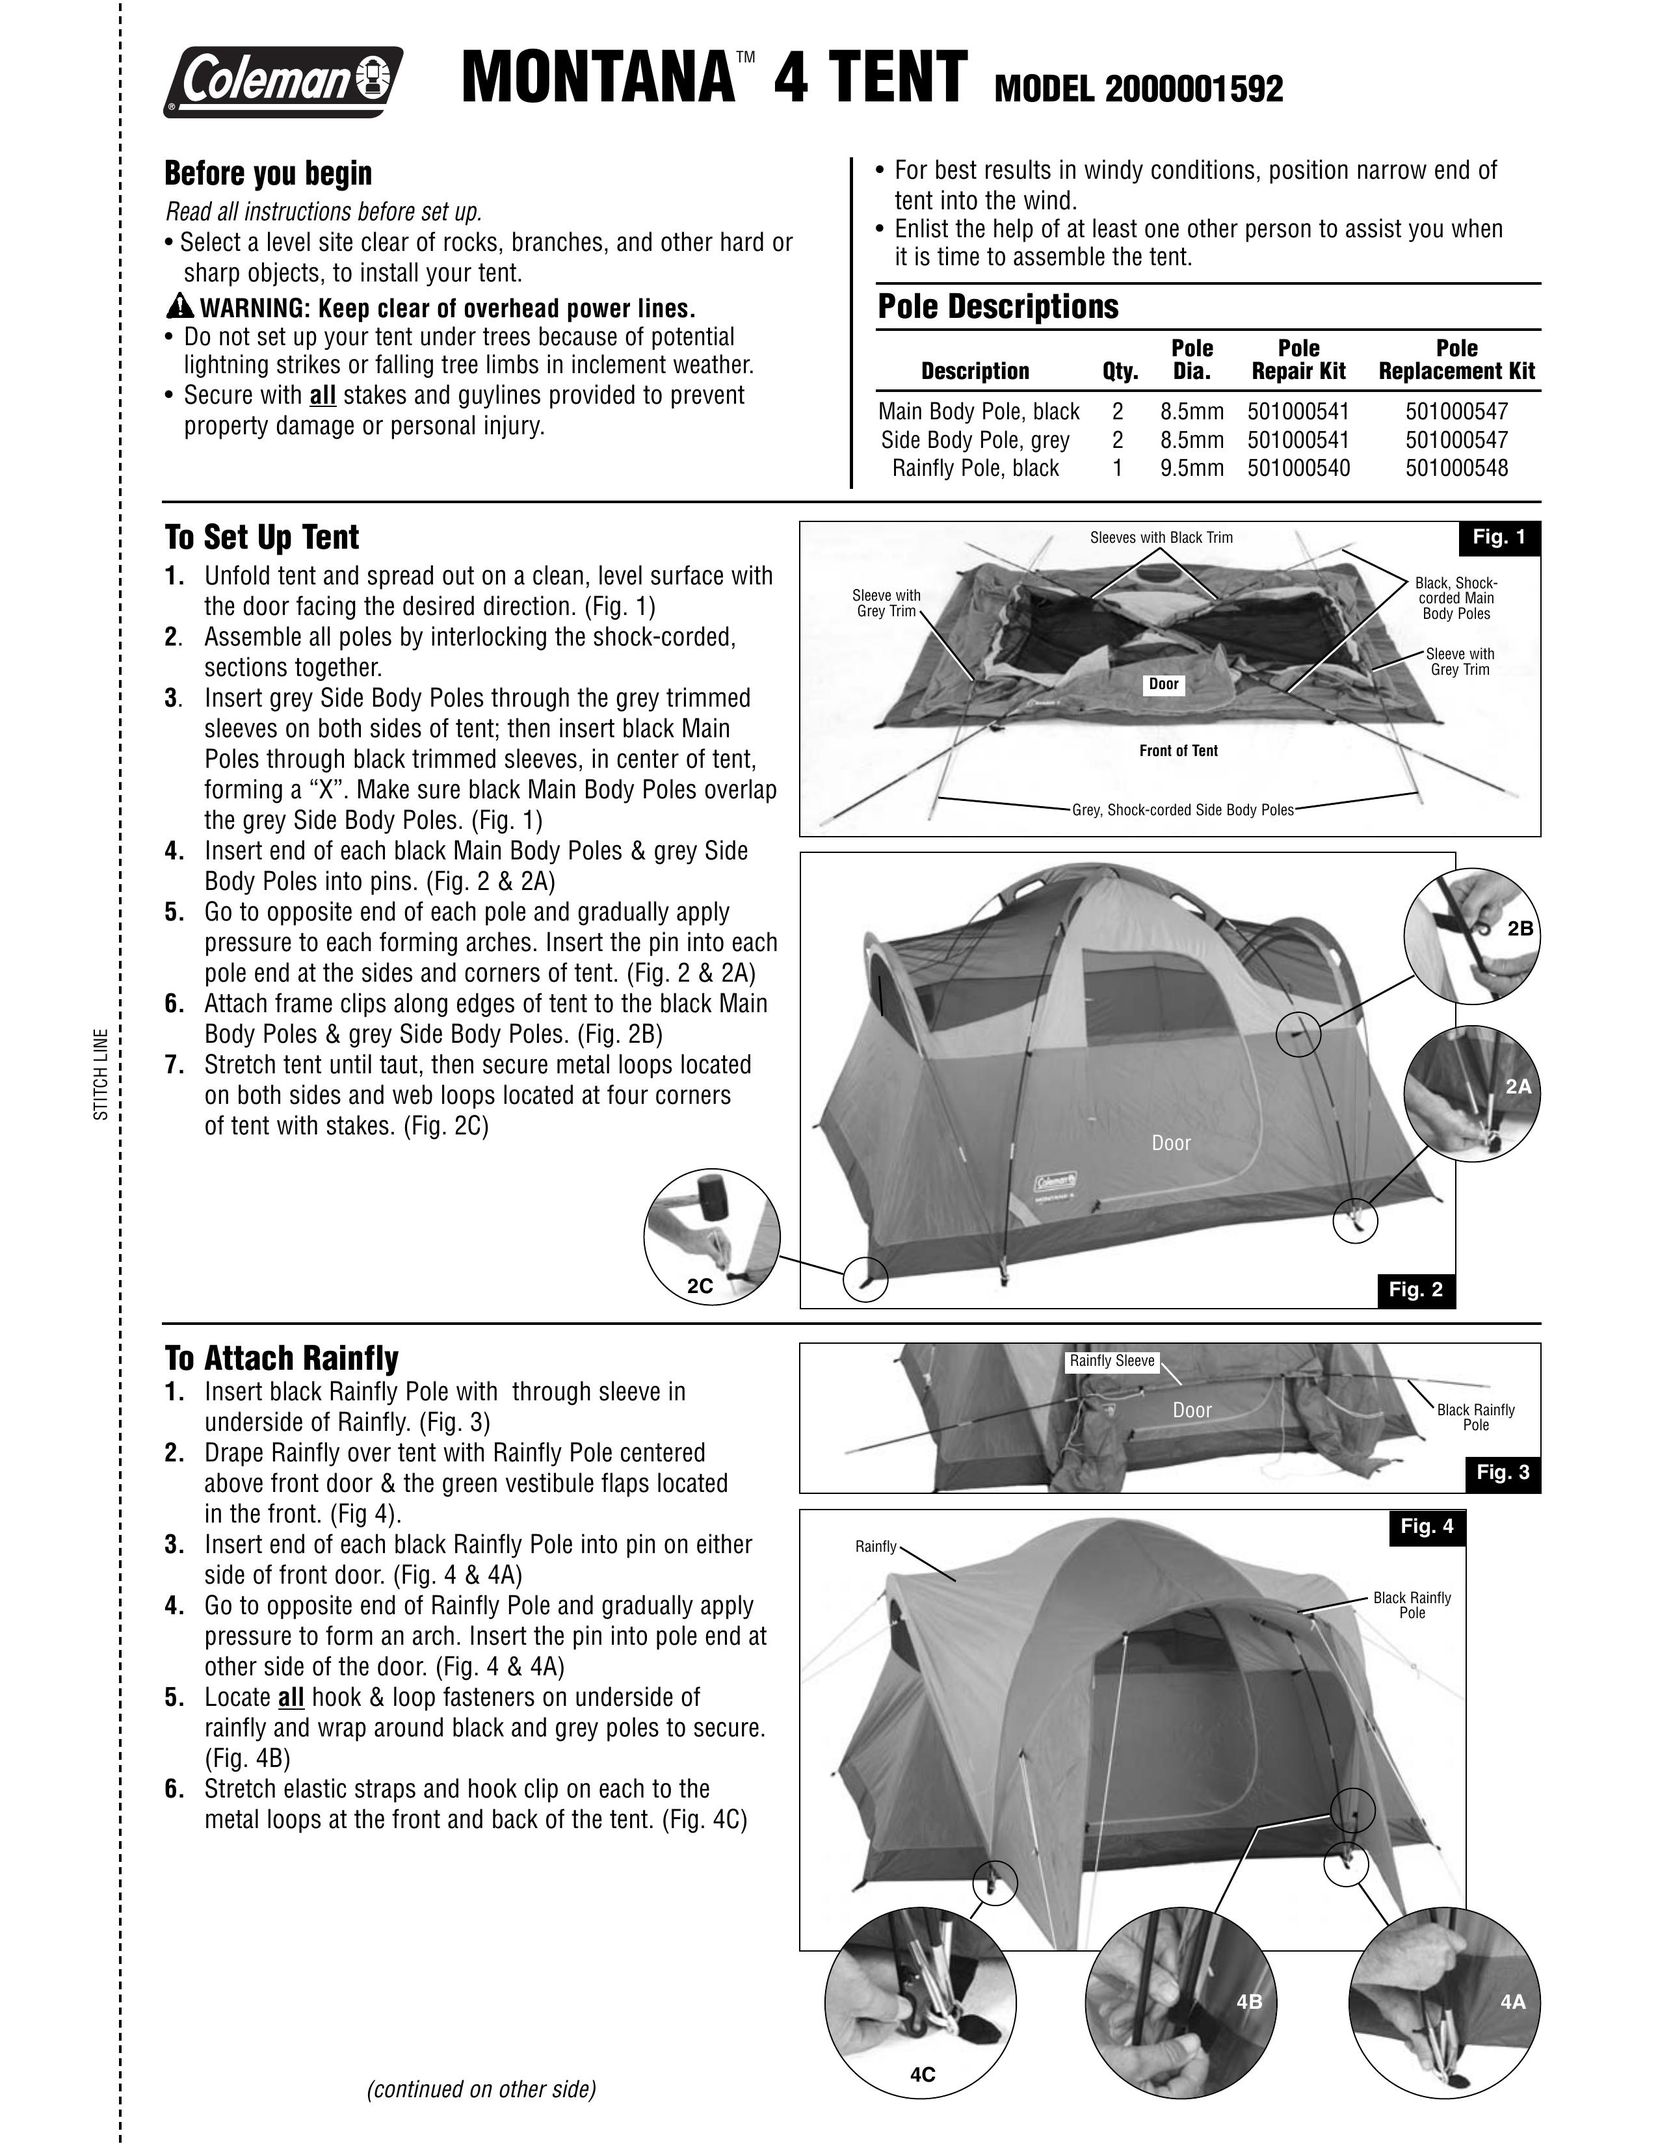 Coleman 2000001592 Tent User Manual